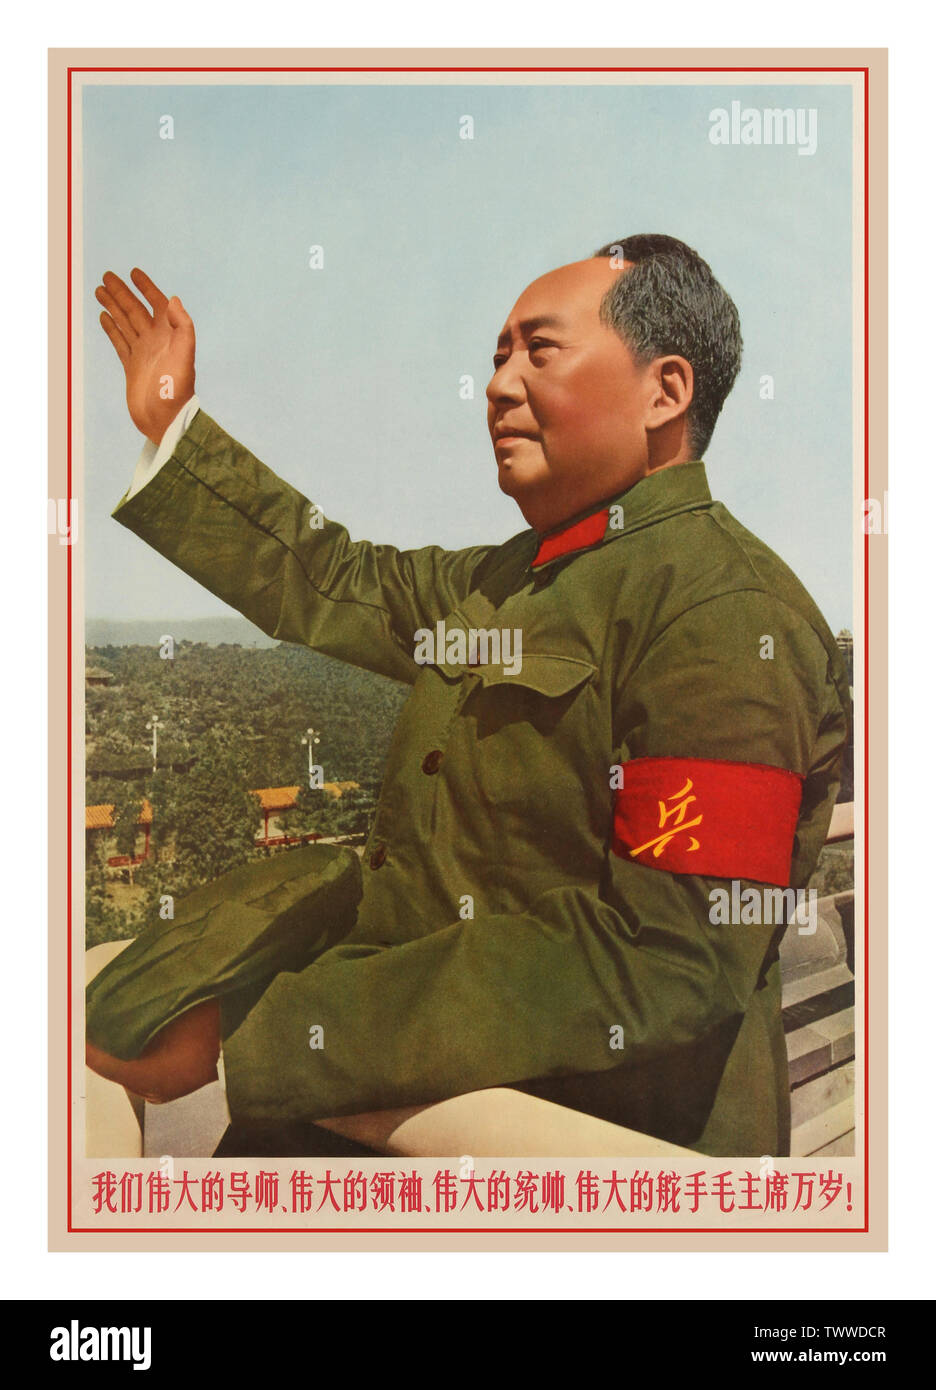 Vintage chinesische Propaganda Poster: "Lang lebe der große Führer Mao!" Farbfoto des Vorsitzenden Mao winkt eine Million revolutionären Massen auf Tien An Men Podium während einer Feier der großen proletarischen Kulturrevolution. China, 1966, Mao Zedong (Dezember 26, 1893 - 9. September 1976), auch als Chairman Mao bekannt, eine chinesische Kommunistische Revolutionäre war, den Gründervater der Volksrepublik China ist, die er als Vorsitzender der Kommunistischen Partei Chinas von der Gründung 1949 bis zu seinem Tod 1976 regierte. Stockfoto